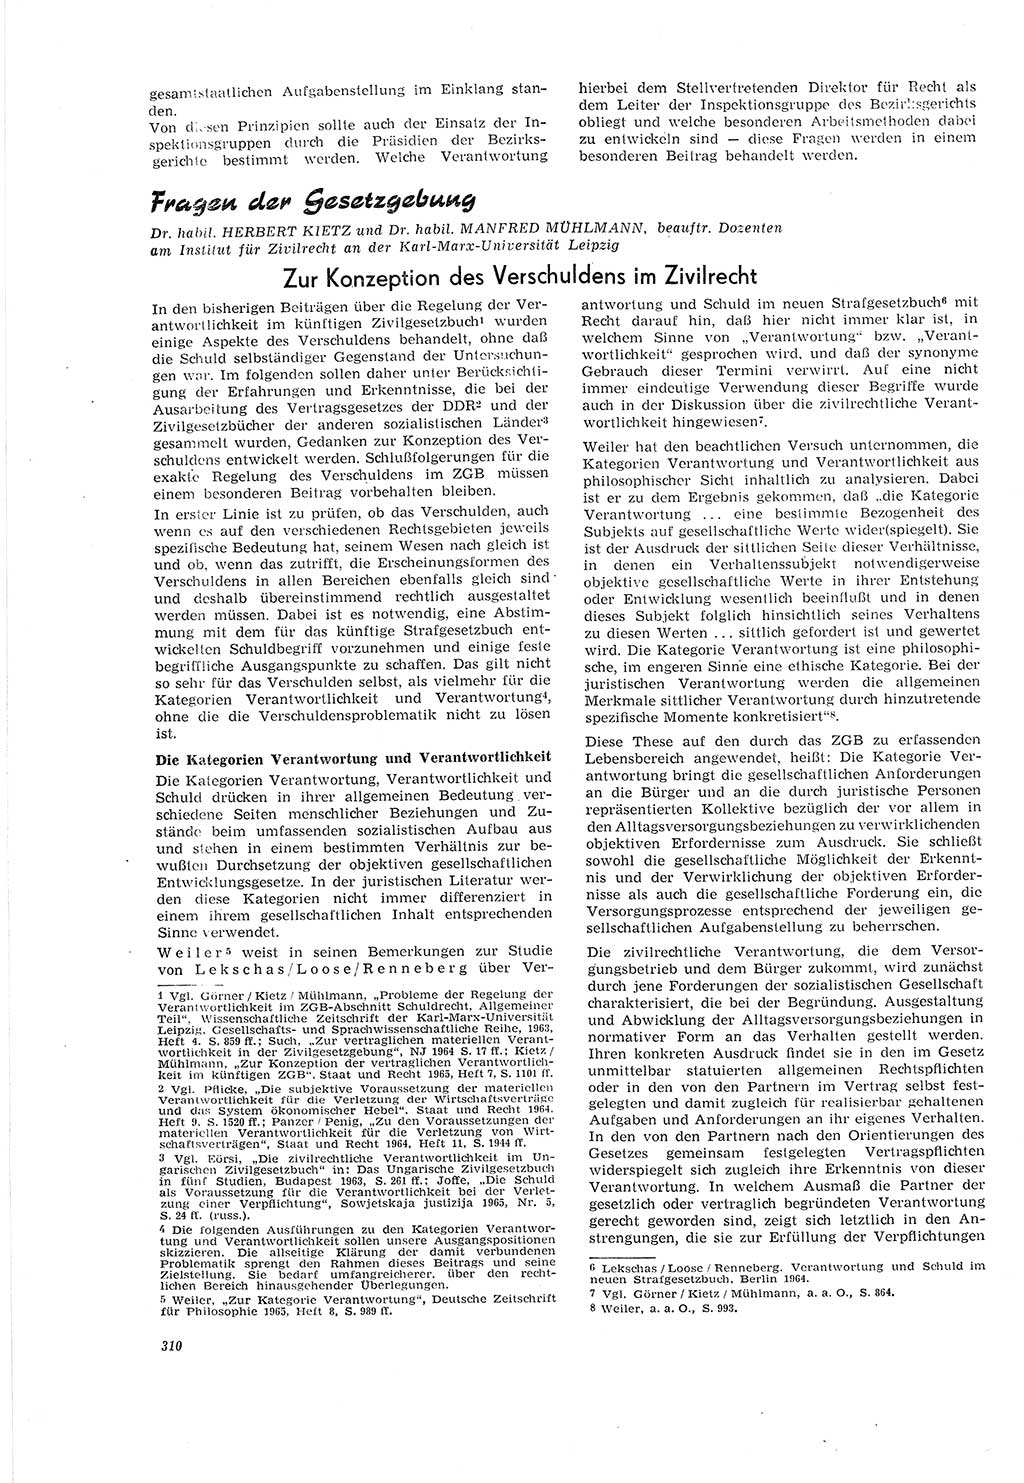 Neue Justiz (NJ), Zeitschrift für Recht und Rechtswissenschaft [Deutsche Demokratische Republik (DDR)], 20. Jahrgang 1966, Seite 310 (NJ DDR 1966, S. 310)